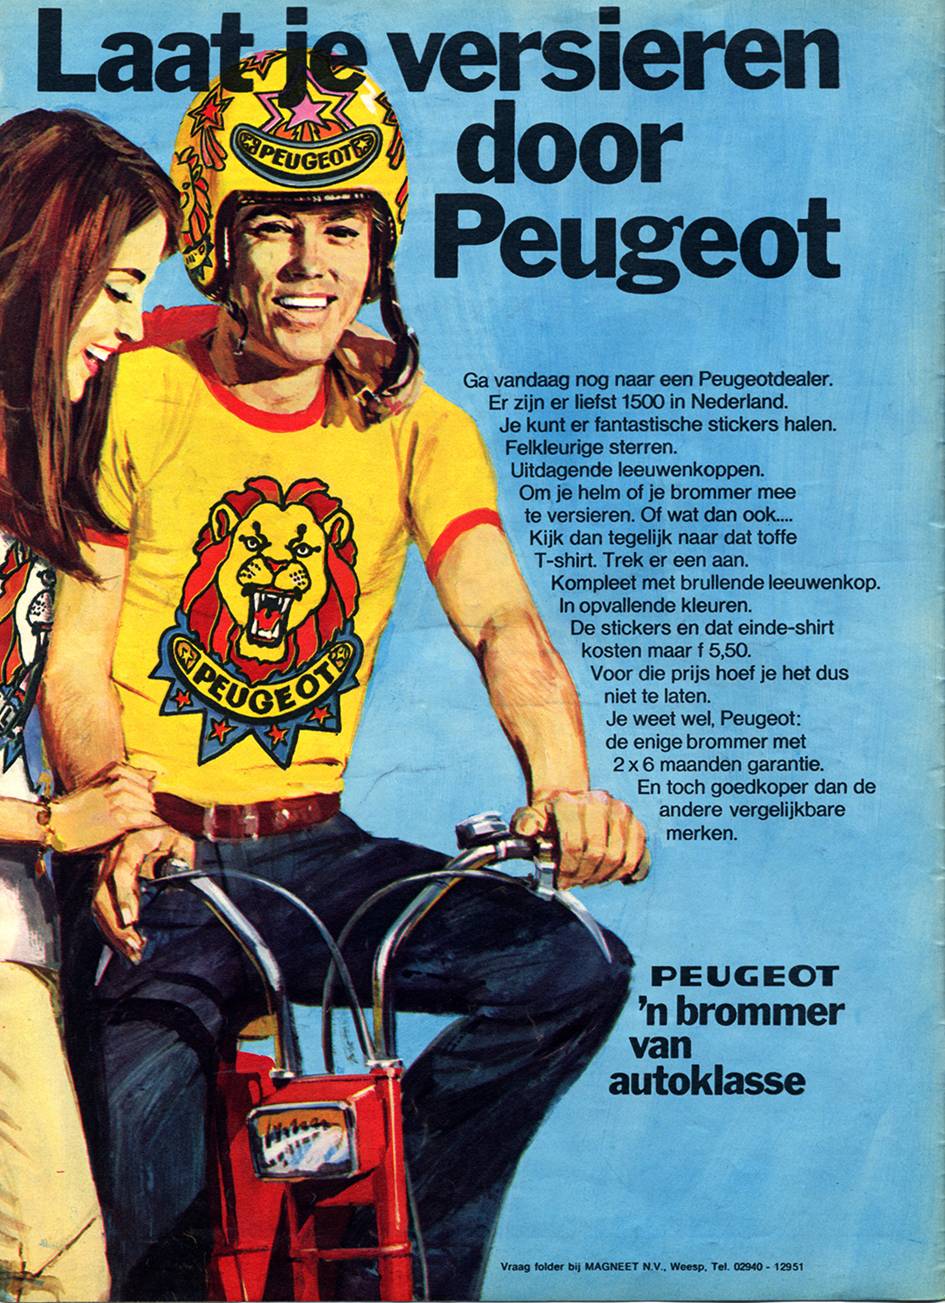 Peugeot MP0472.jpg